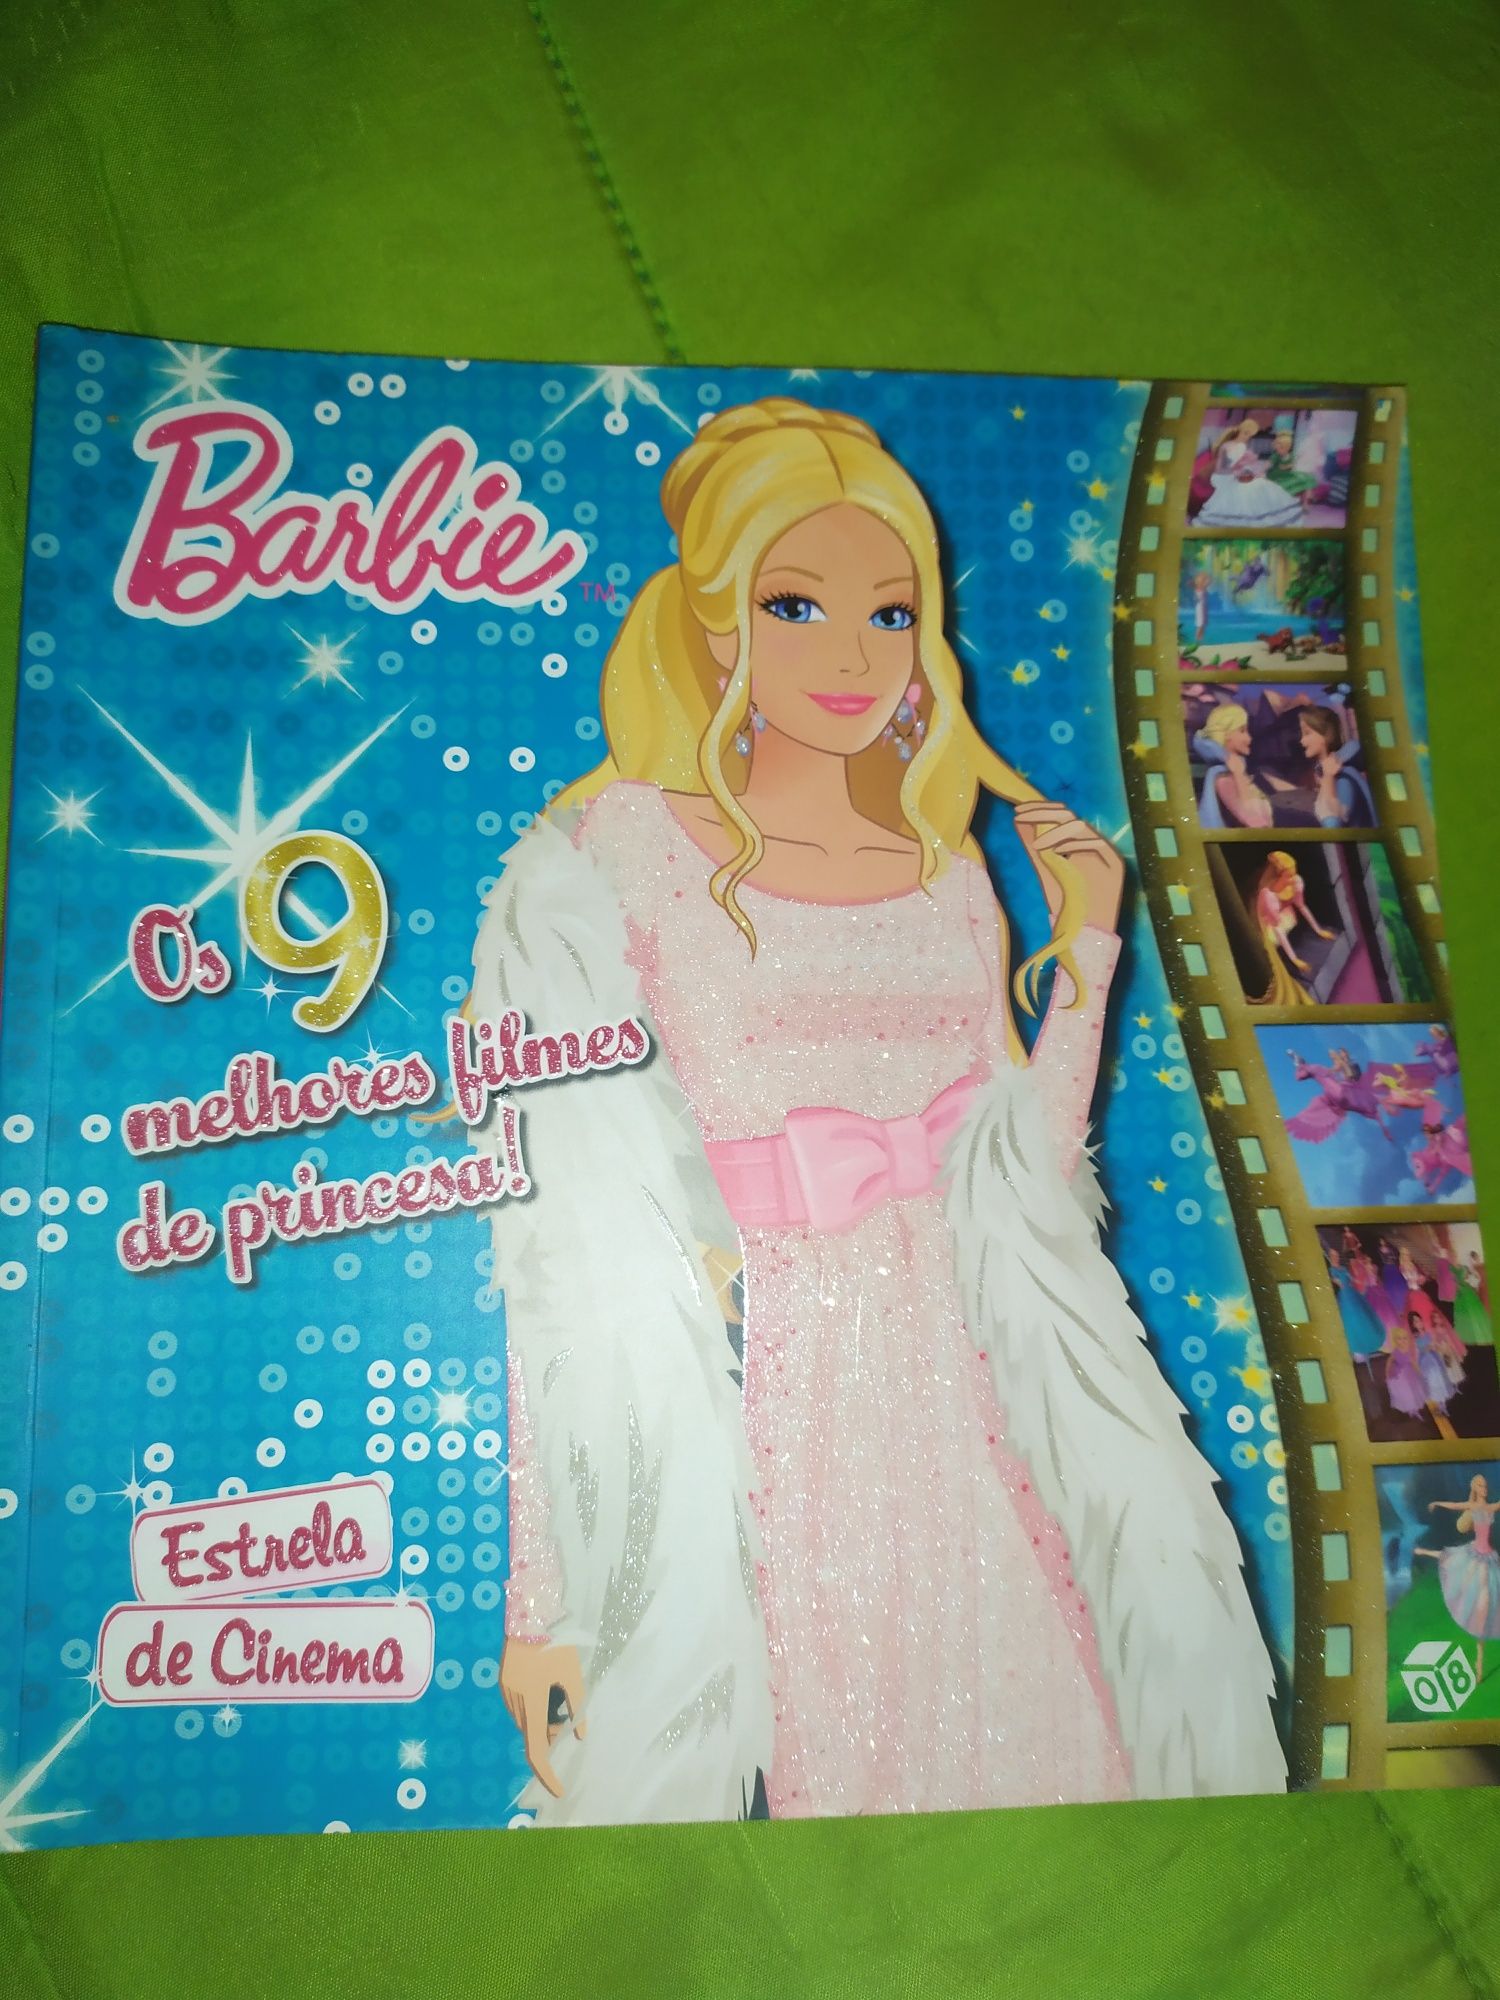 Barbie Os 9 melhores filmes de princesa